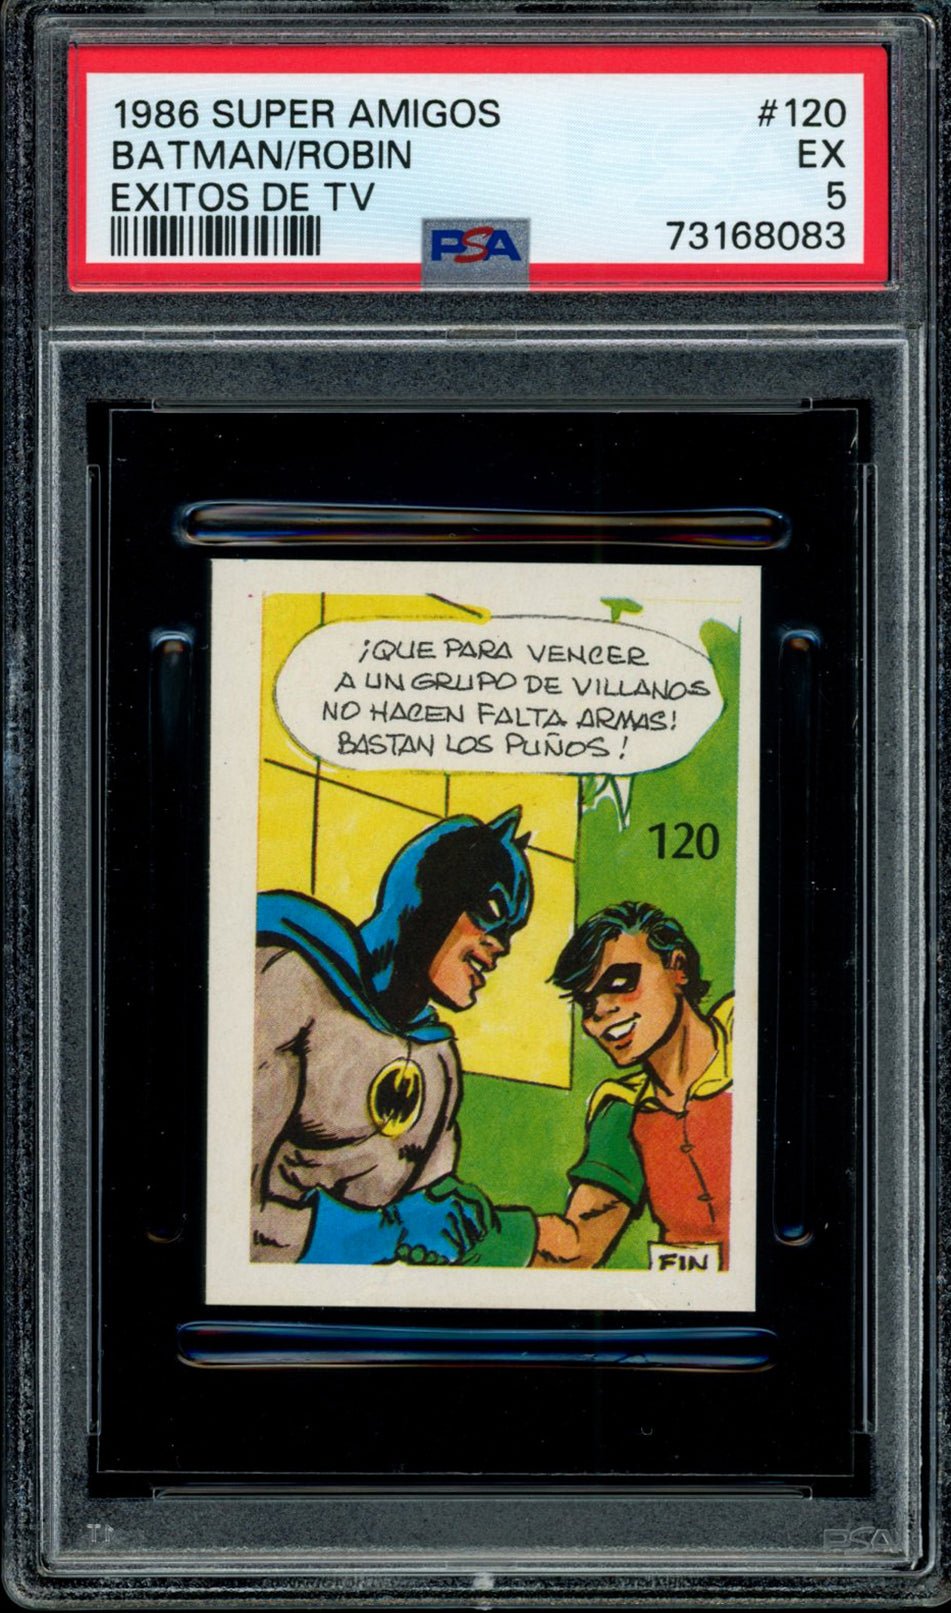 BATMAN & ROBIN PSA 5 1986 Reyauca Super Amigos Exitos de TV #120 DC Comics Base Graded Cards - Hobby Gems